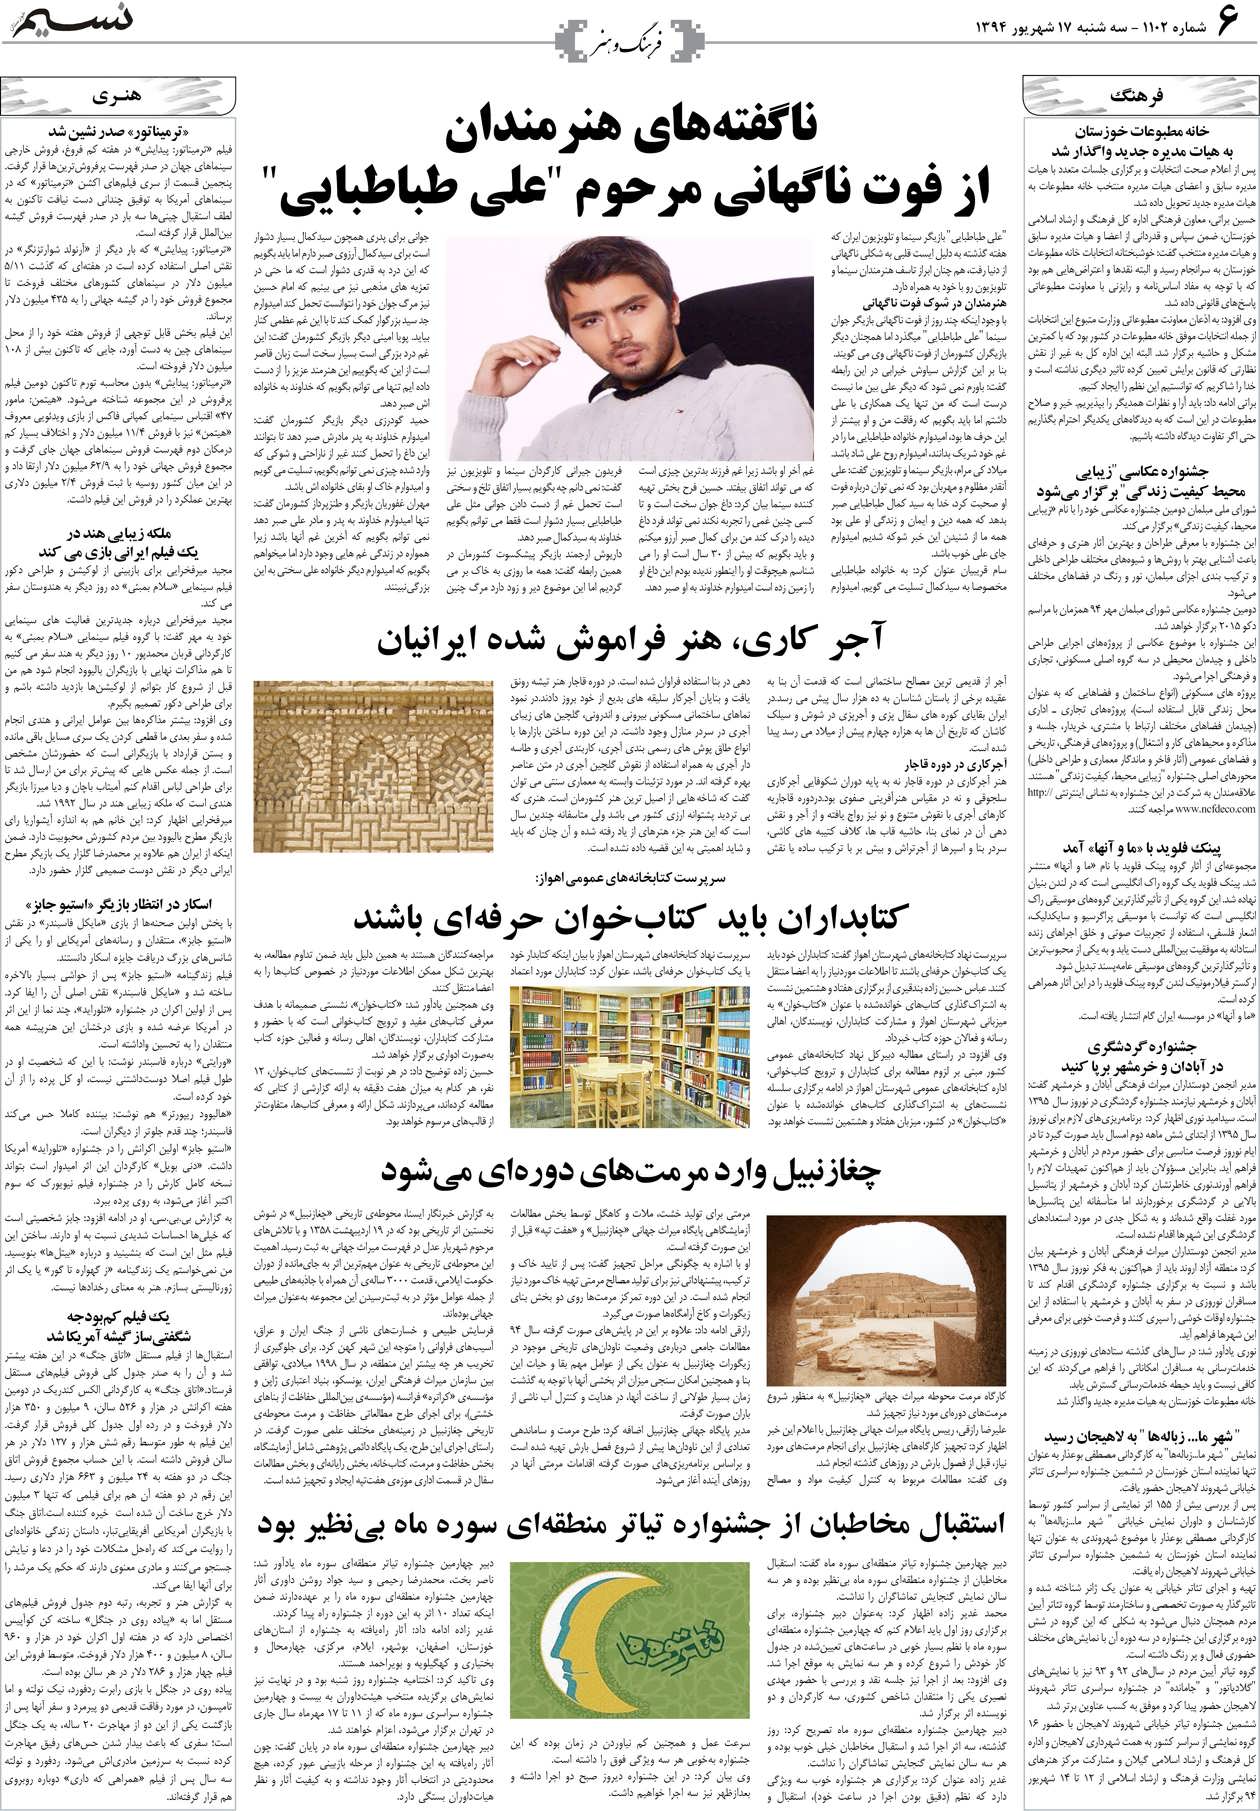 صفحه فرهنگ و هنر روزنامه نسیم شماره 1102